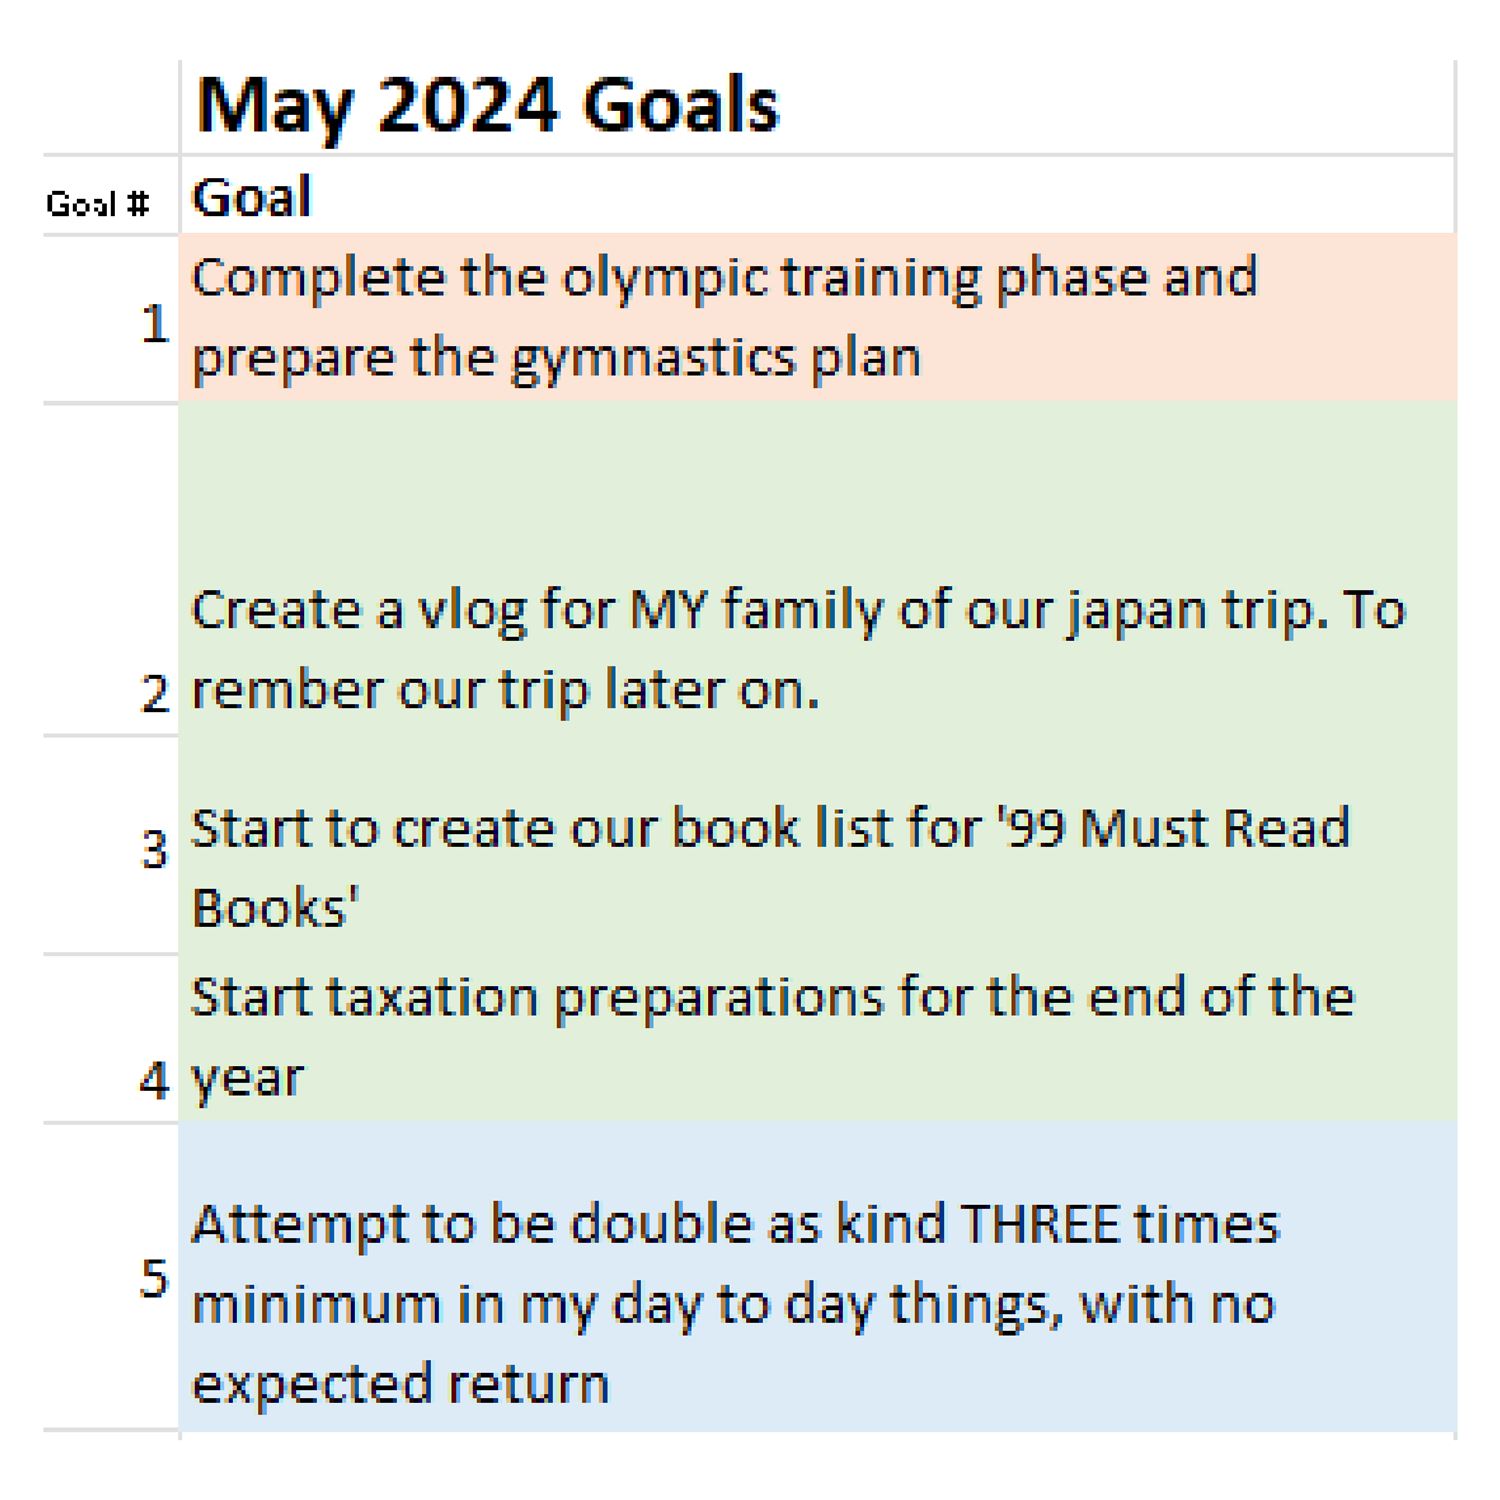 Juans May 2024 Goals